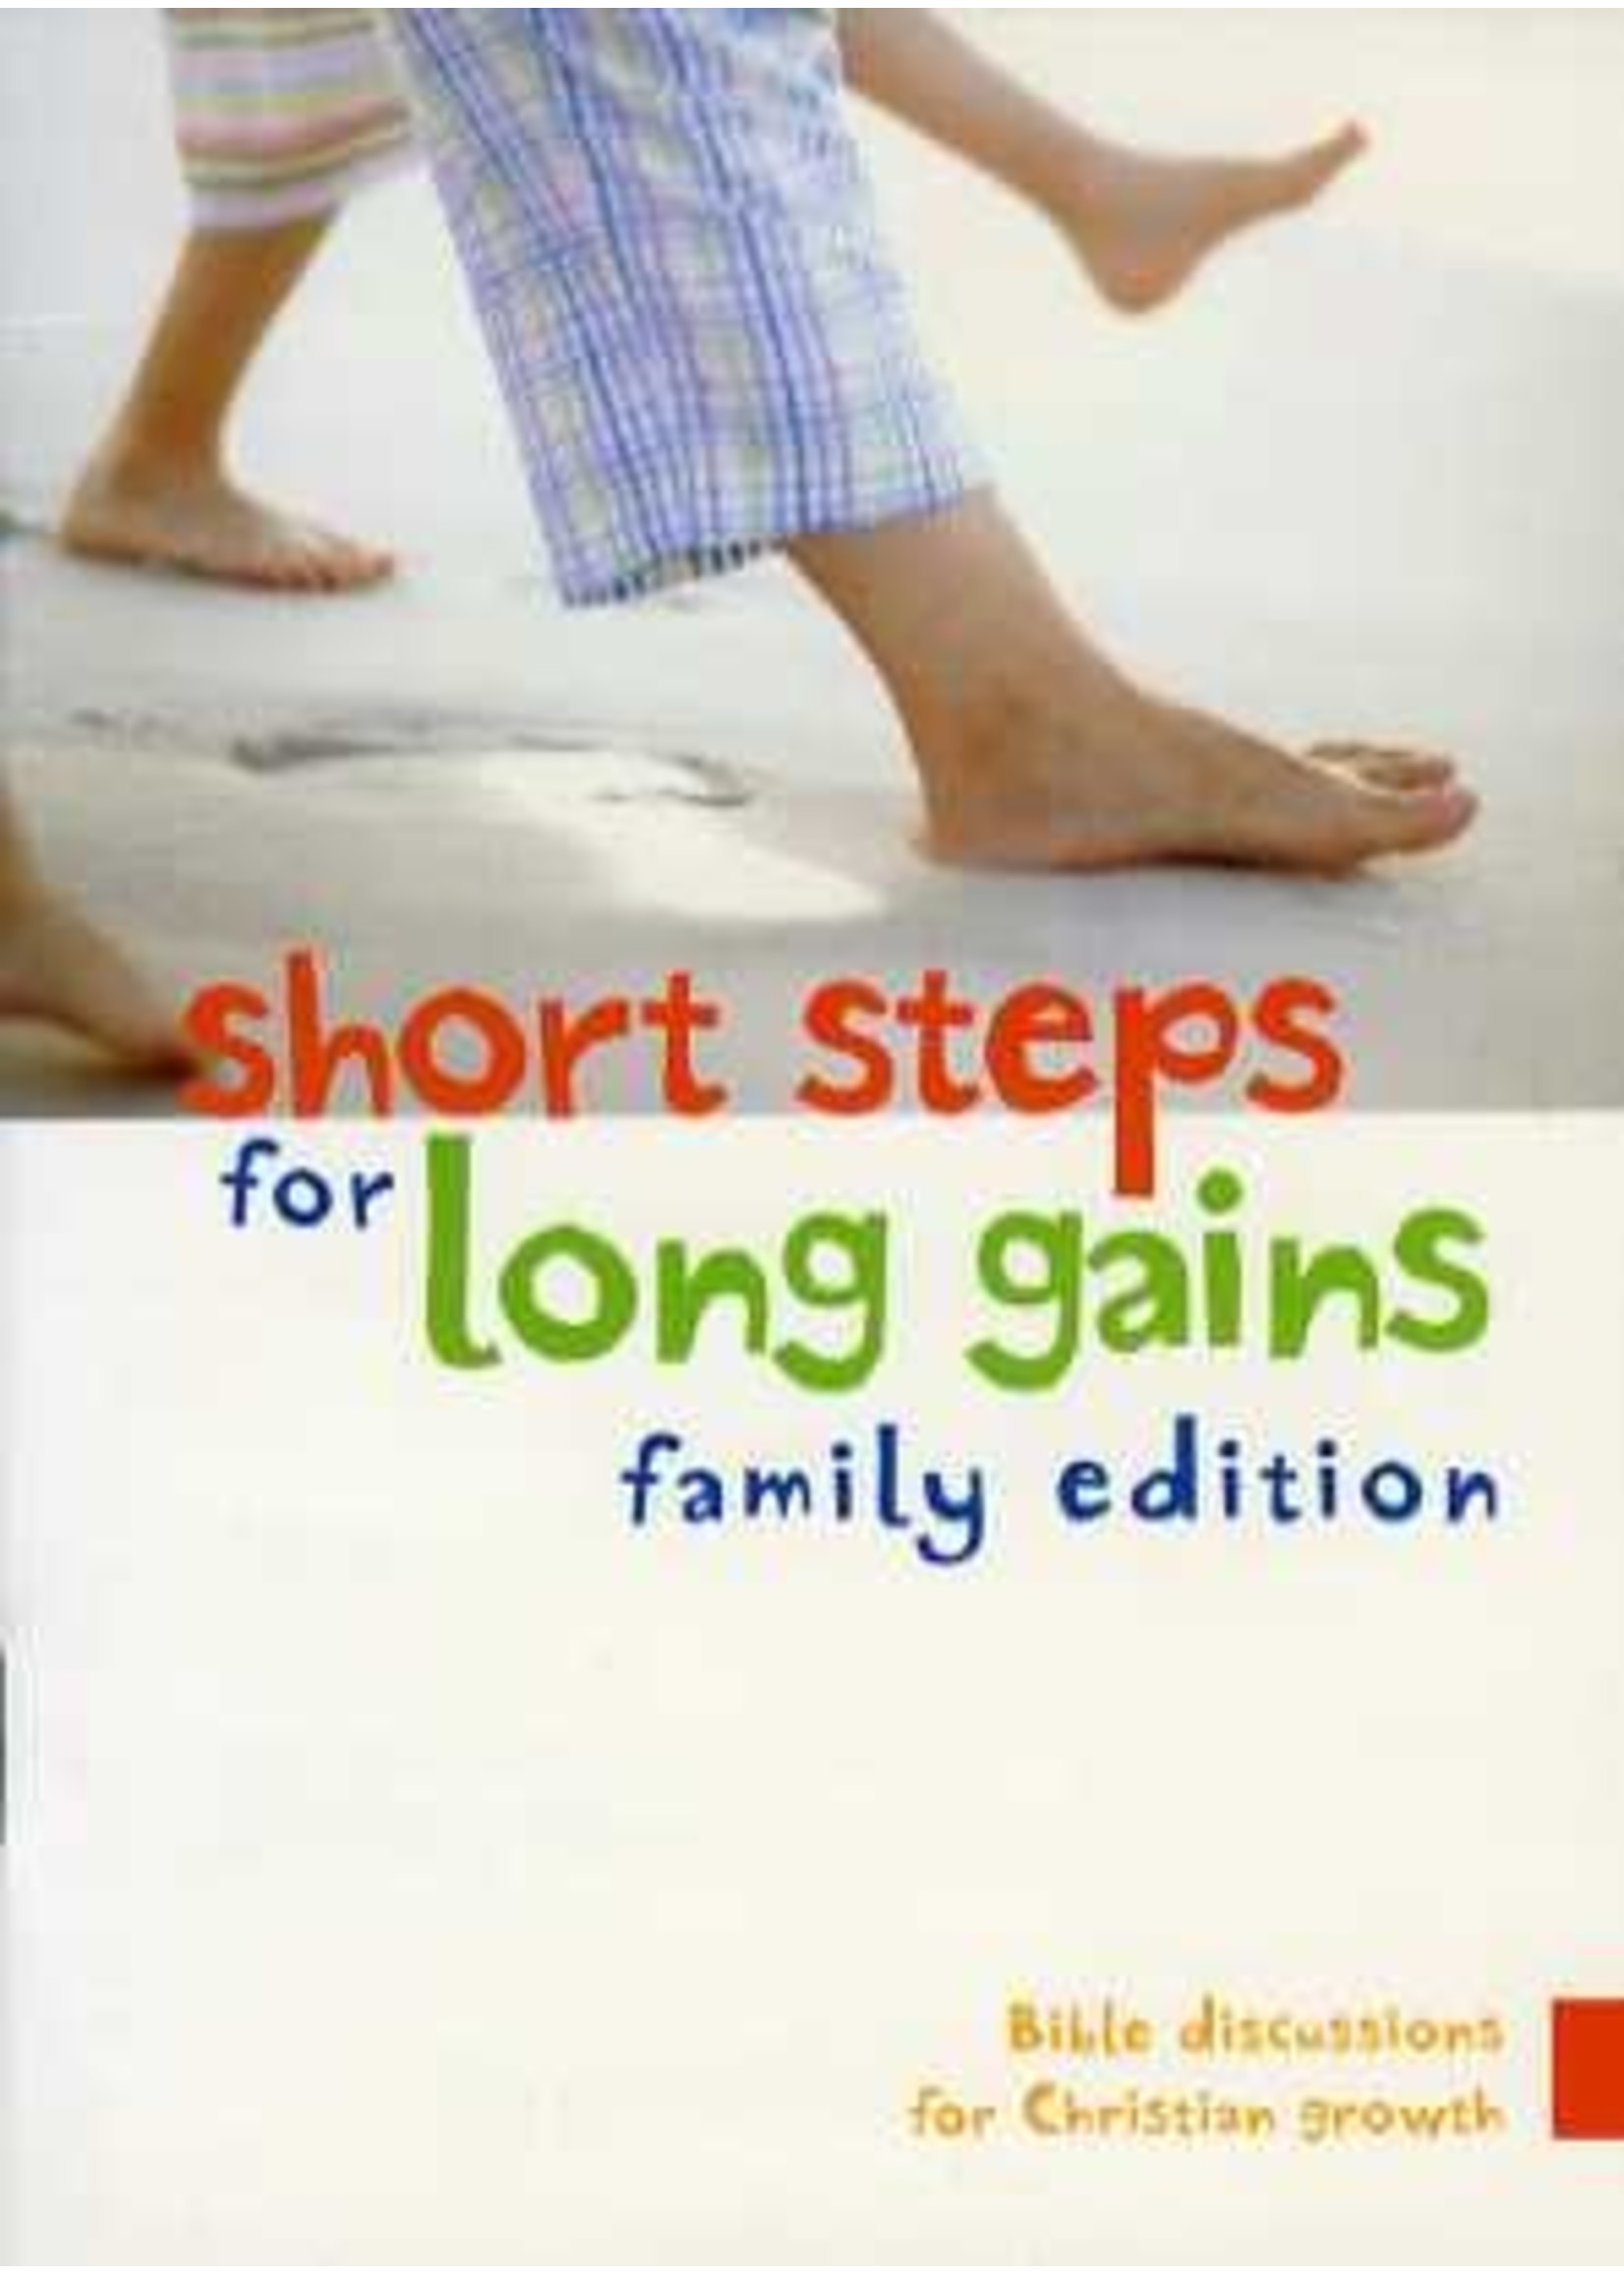 Short Steps for Long Gains - Simon Manchester